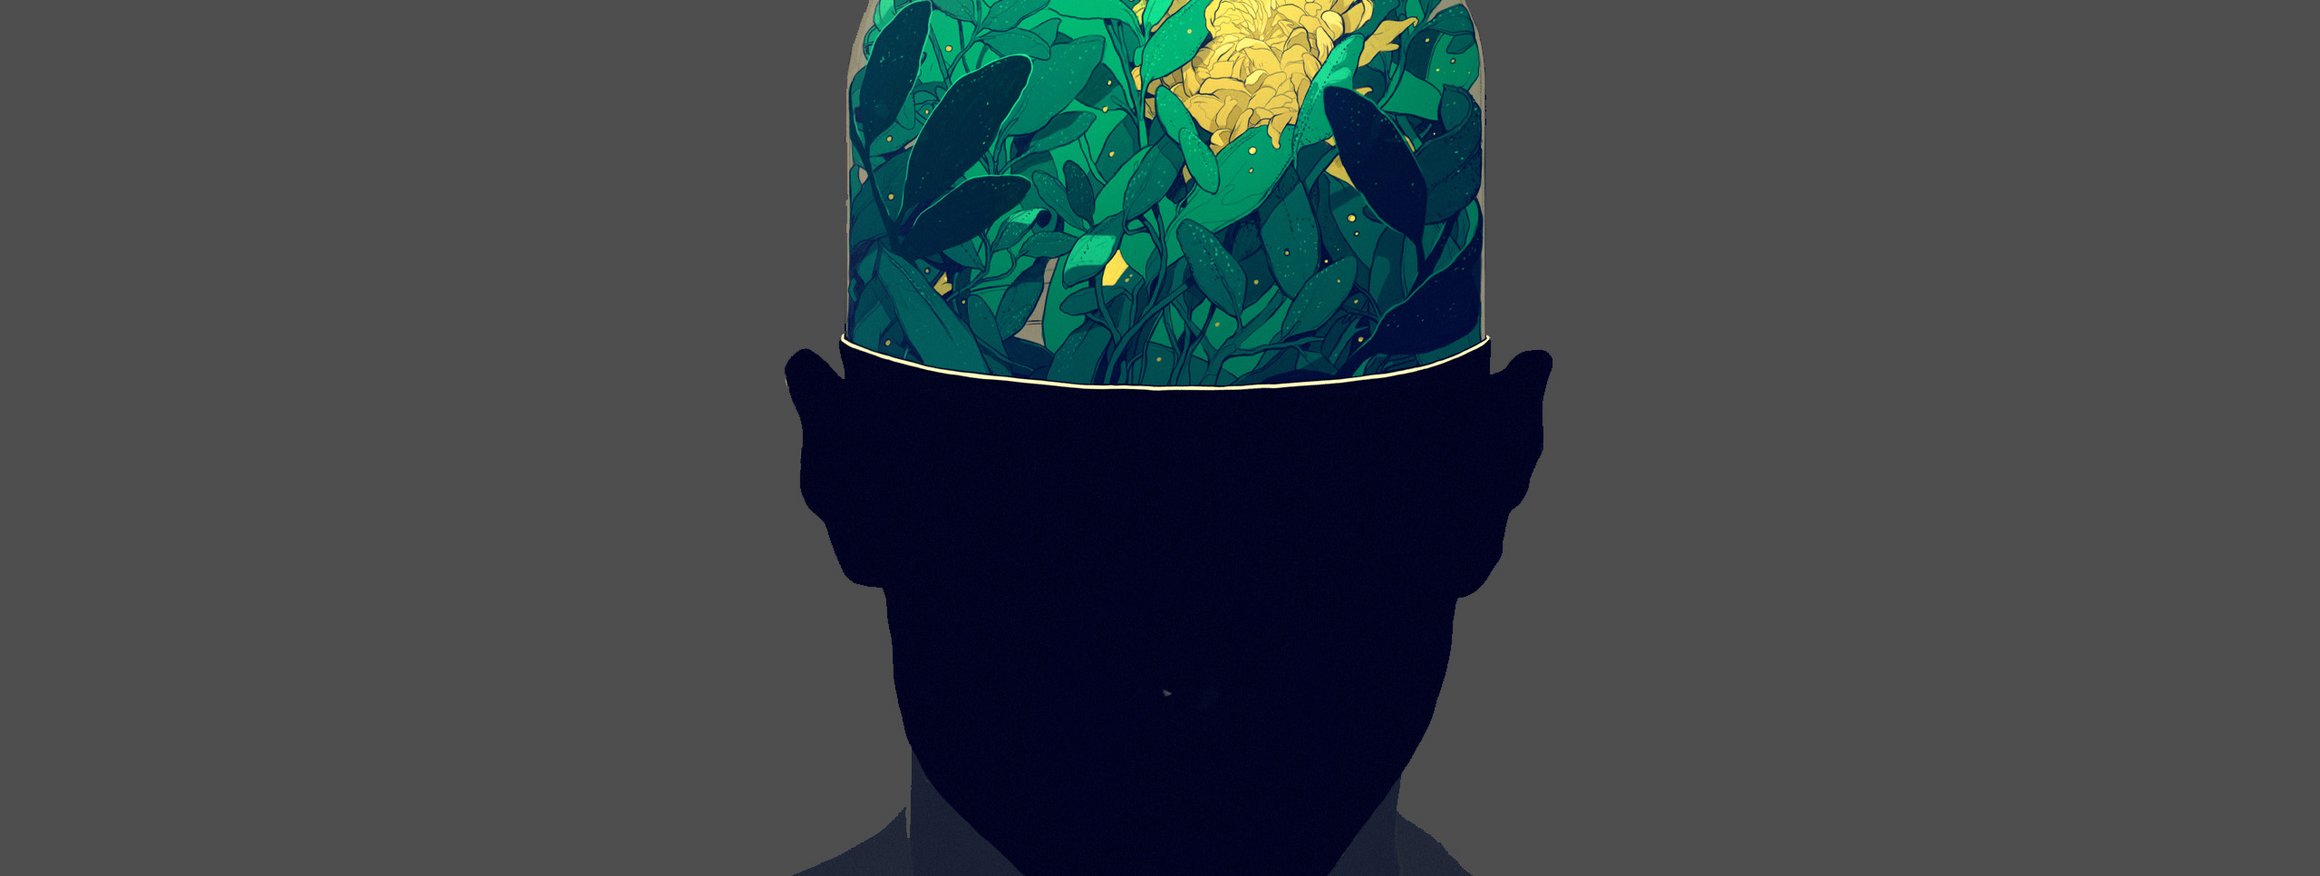 Der Kopf eines Menschen ist halb durchsichtig, und das Gehirn darin besteht aus Pflanzen